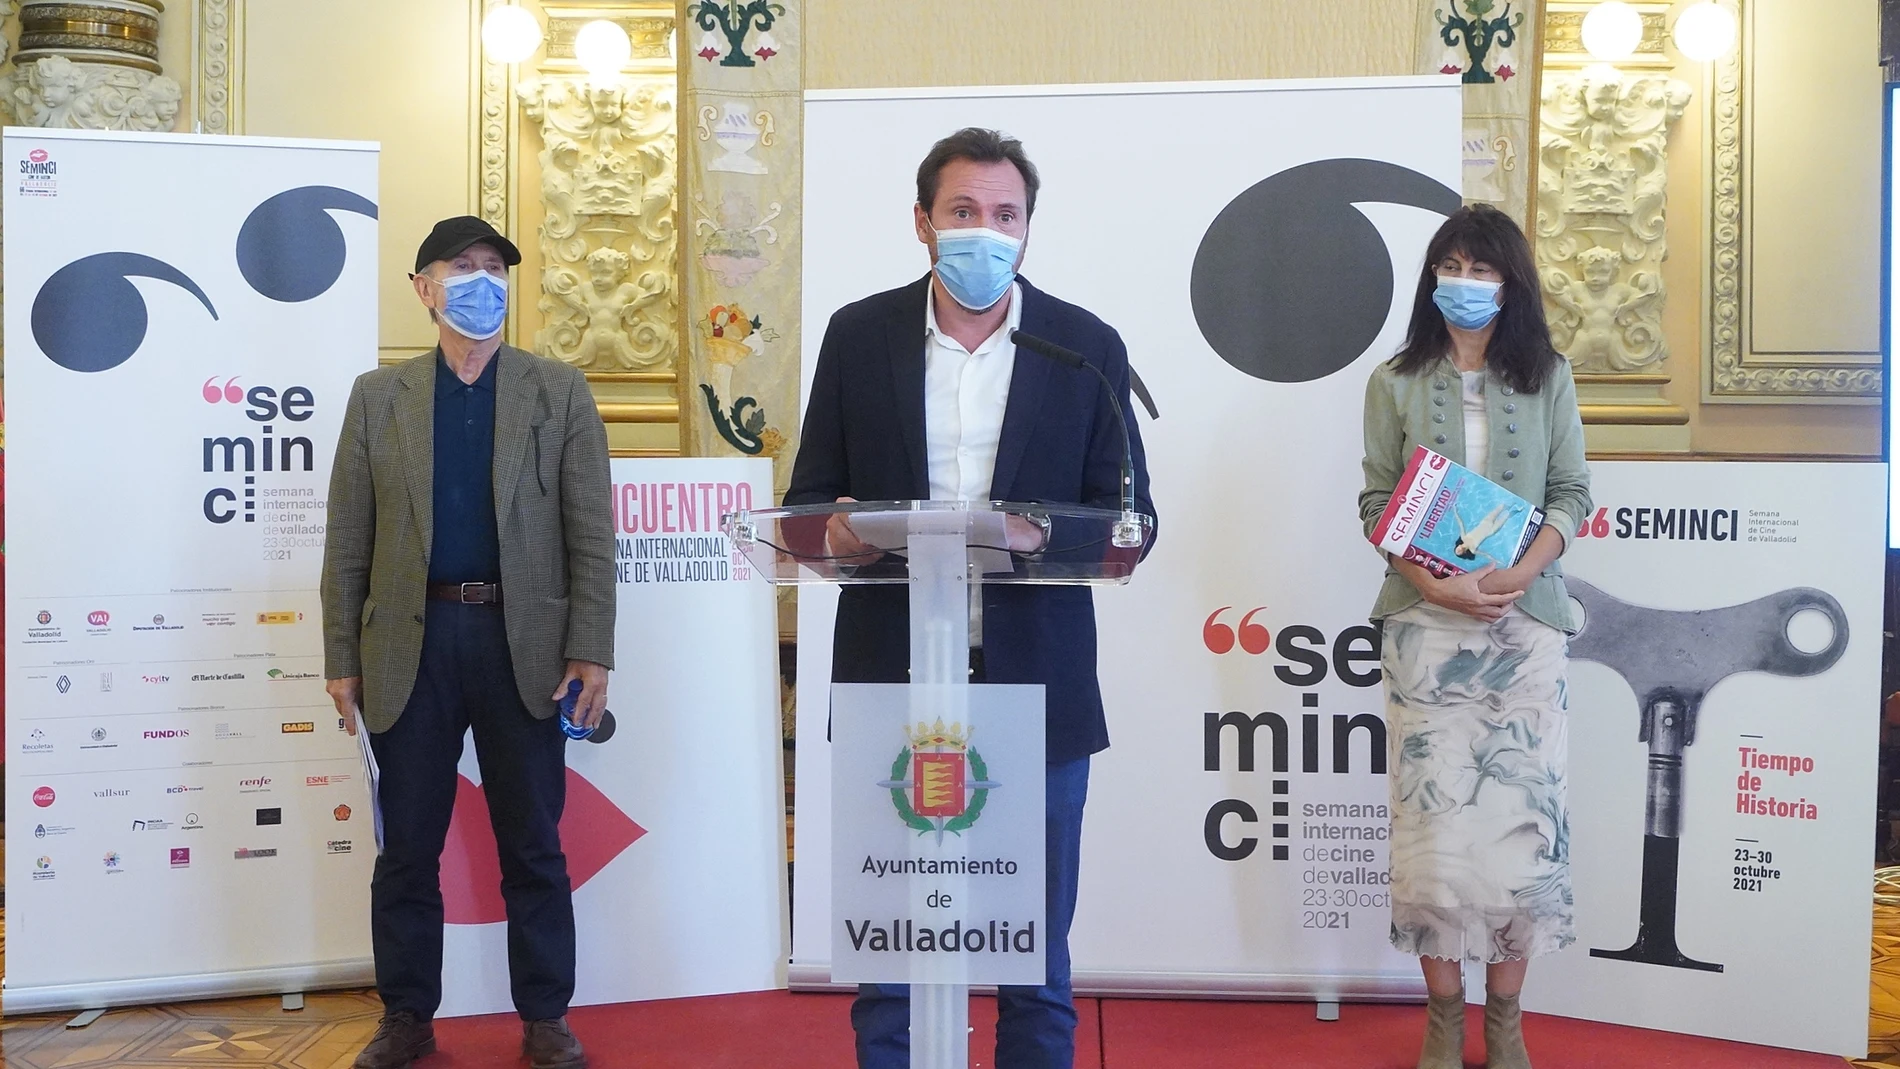 El alcalde de Valladolid, Óscar Puente, presenta la 66 edición de la Seminci, junto a la concejala Ana Redondo y el director del festival, Javier Ángulo